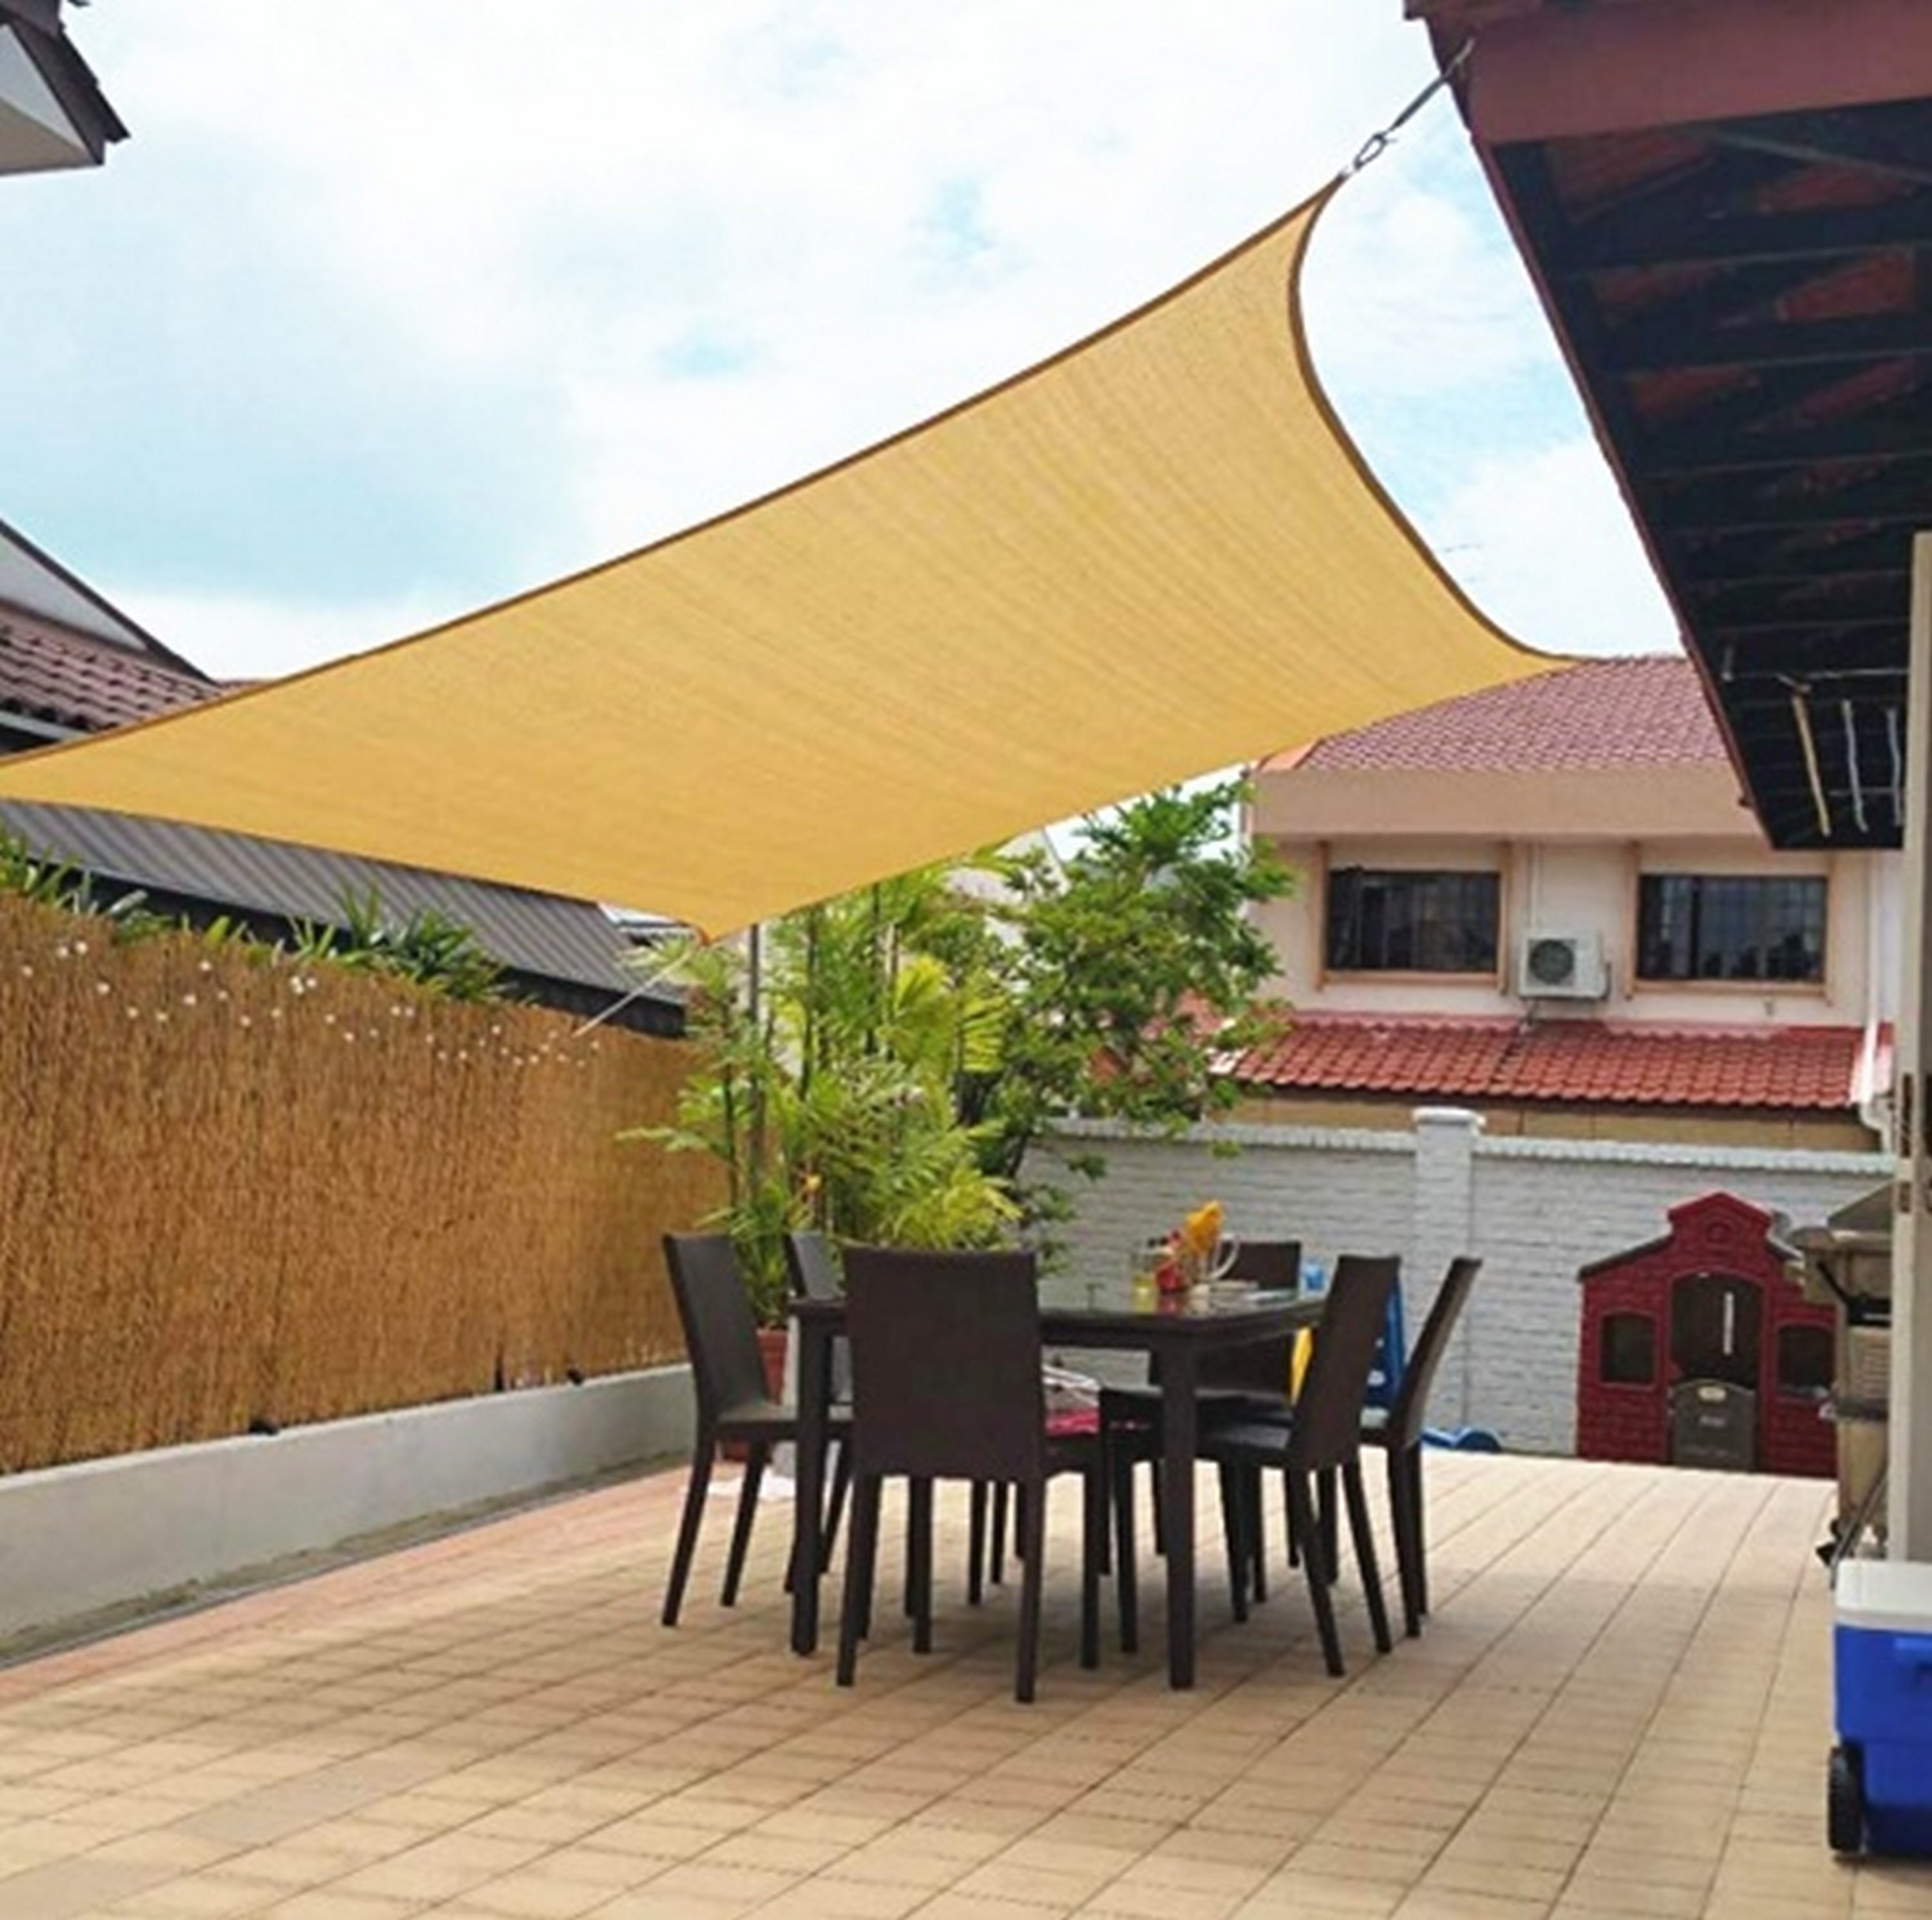 Triangle Sun Shade Sail Canopy Sand UV Block Sunshade For Backyard Deck Outdoor 